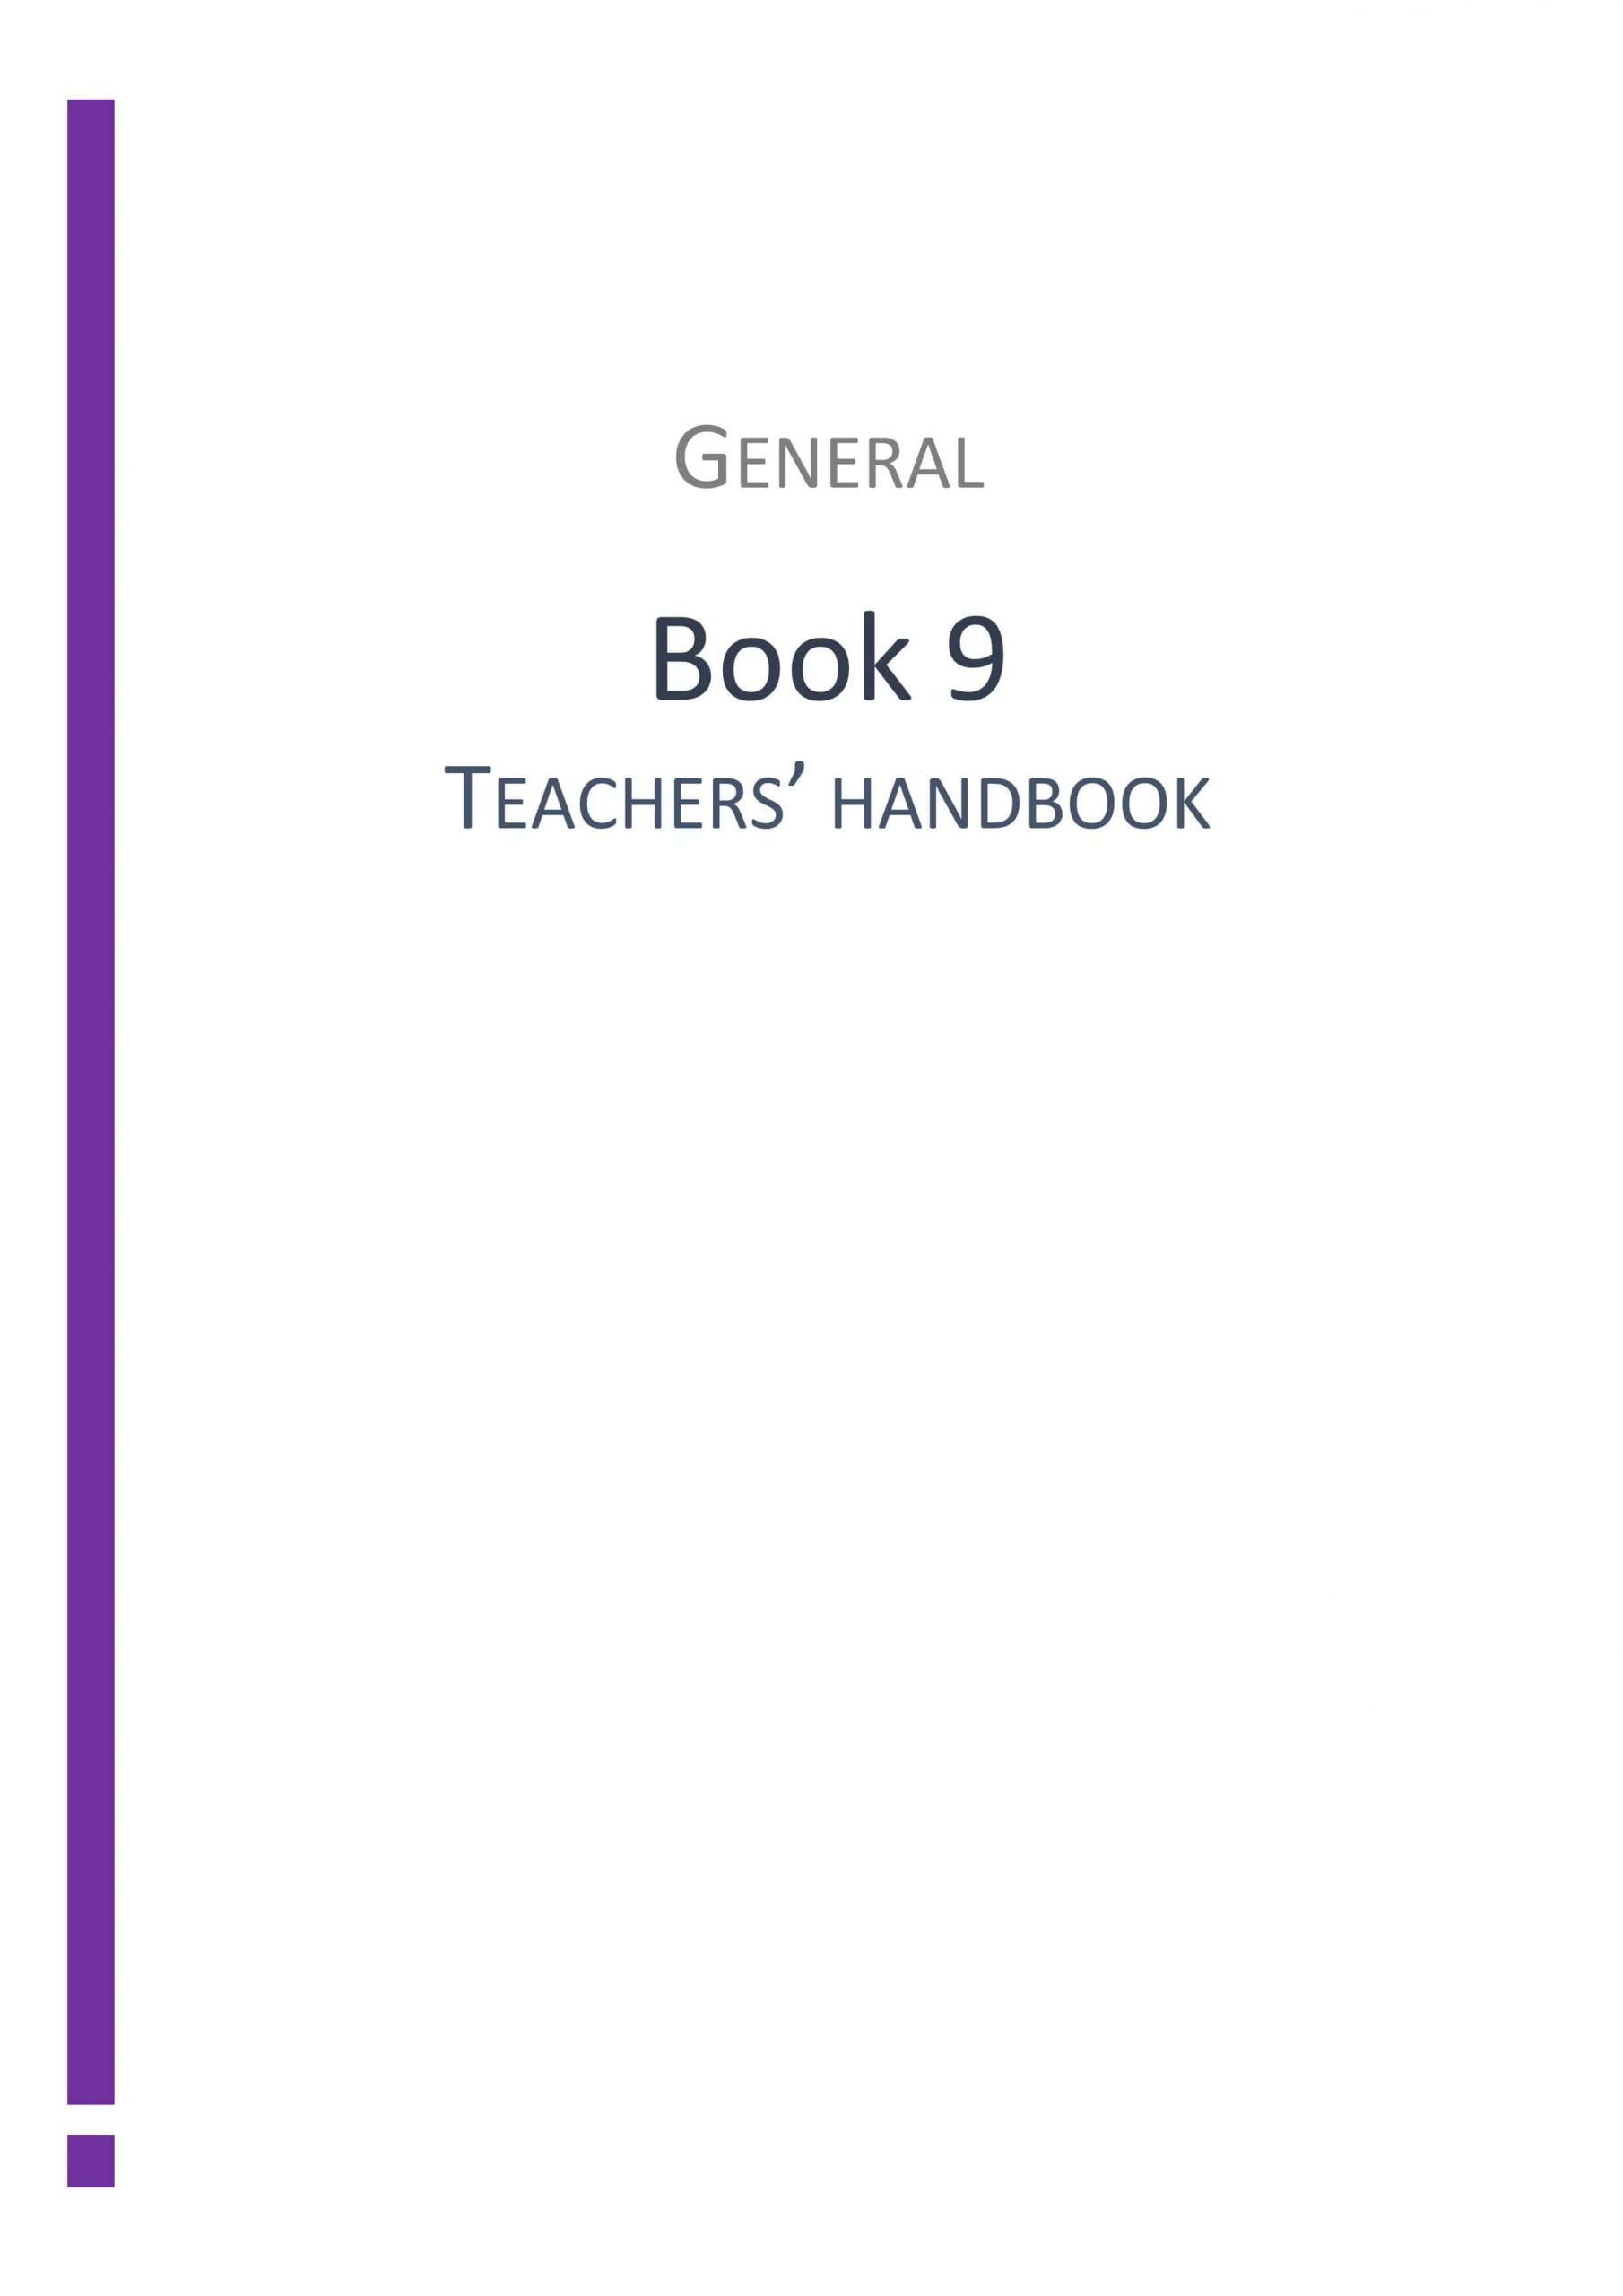 دليل المعلم GENERAL Book الفصل الدراسي الثاني الصف التاسع مادة اللغة الانجليزية 